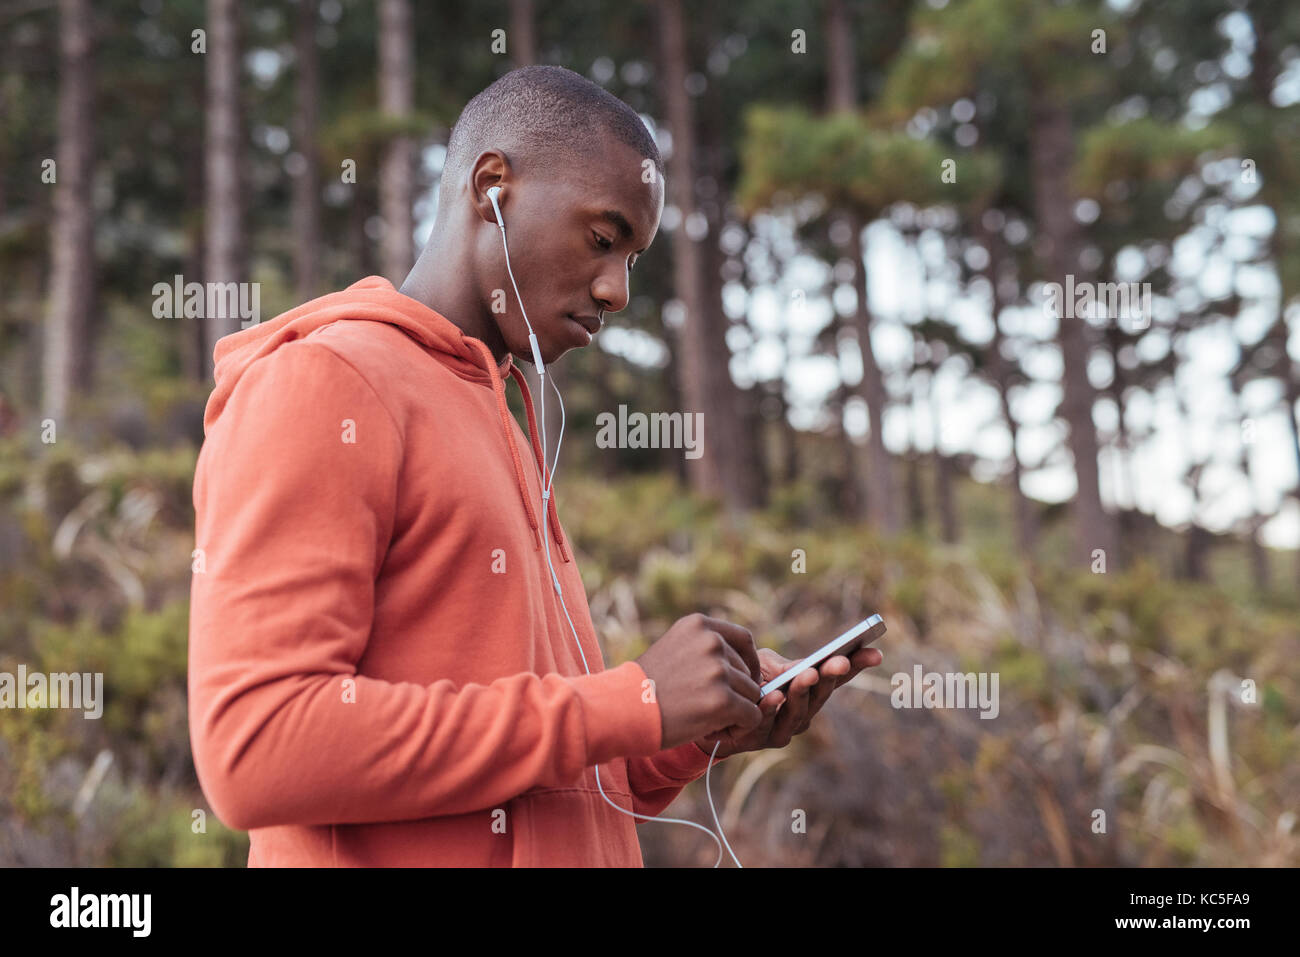 Passen junge afrikanische Menschen Musik hören vor einem Lauf Stockfoto